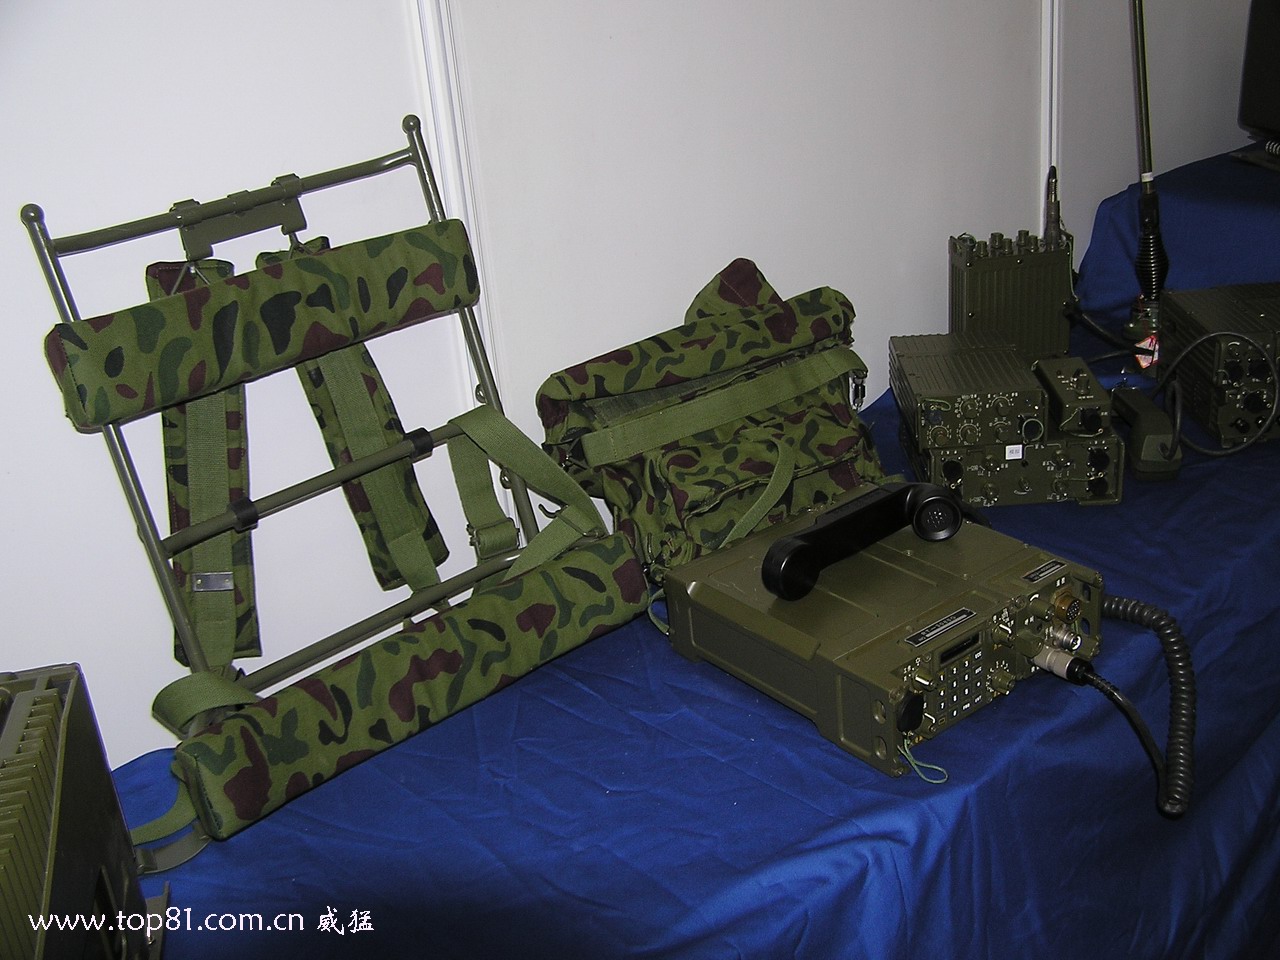 PZ-98 artillery position communication system